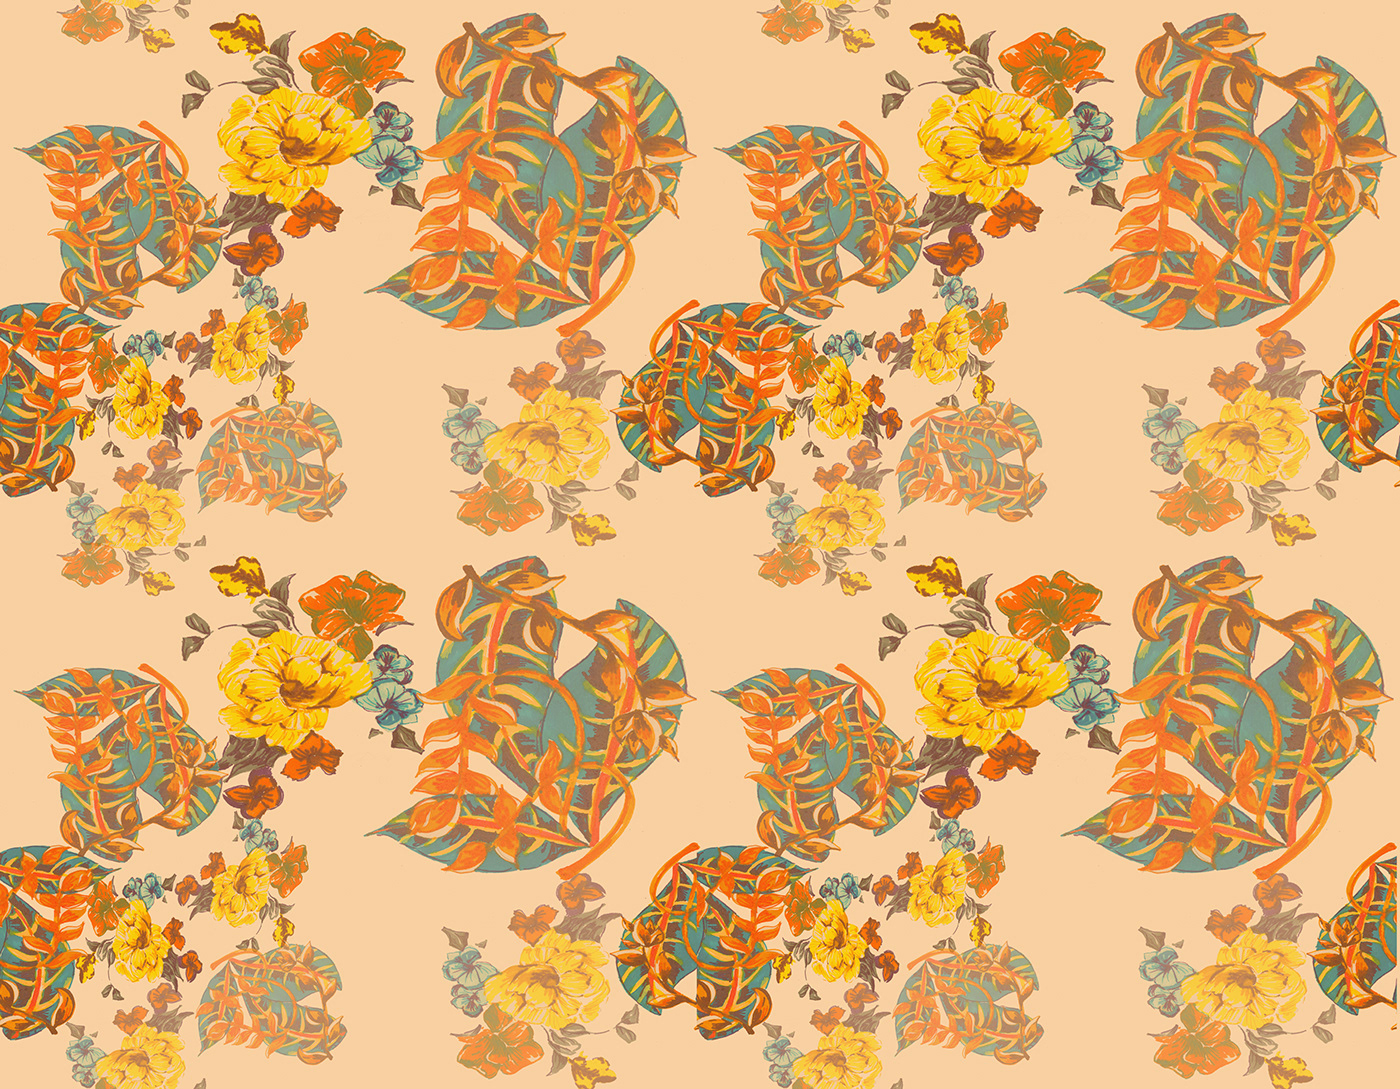 zara print design  digital design ILLUSTRATION  Hand Painted motifs vinatge florals